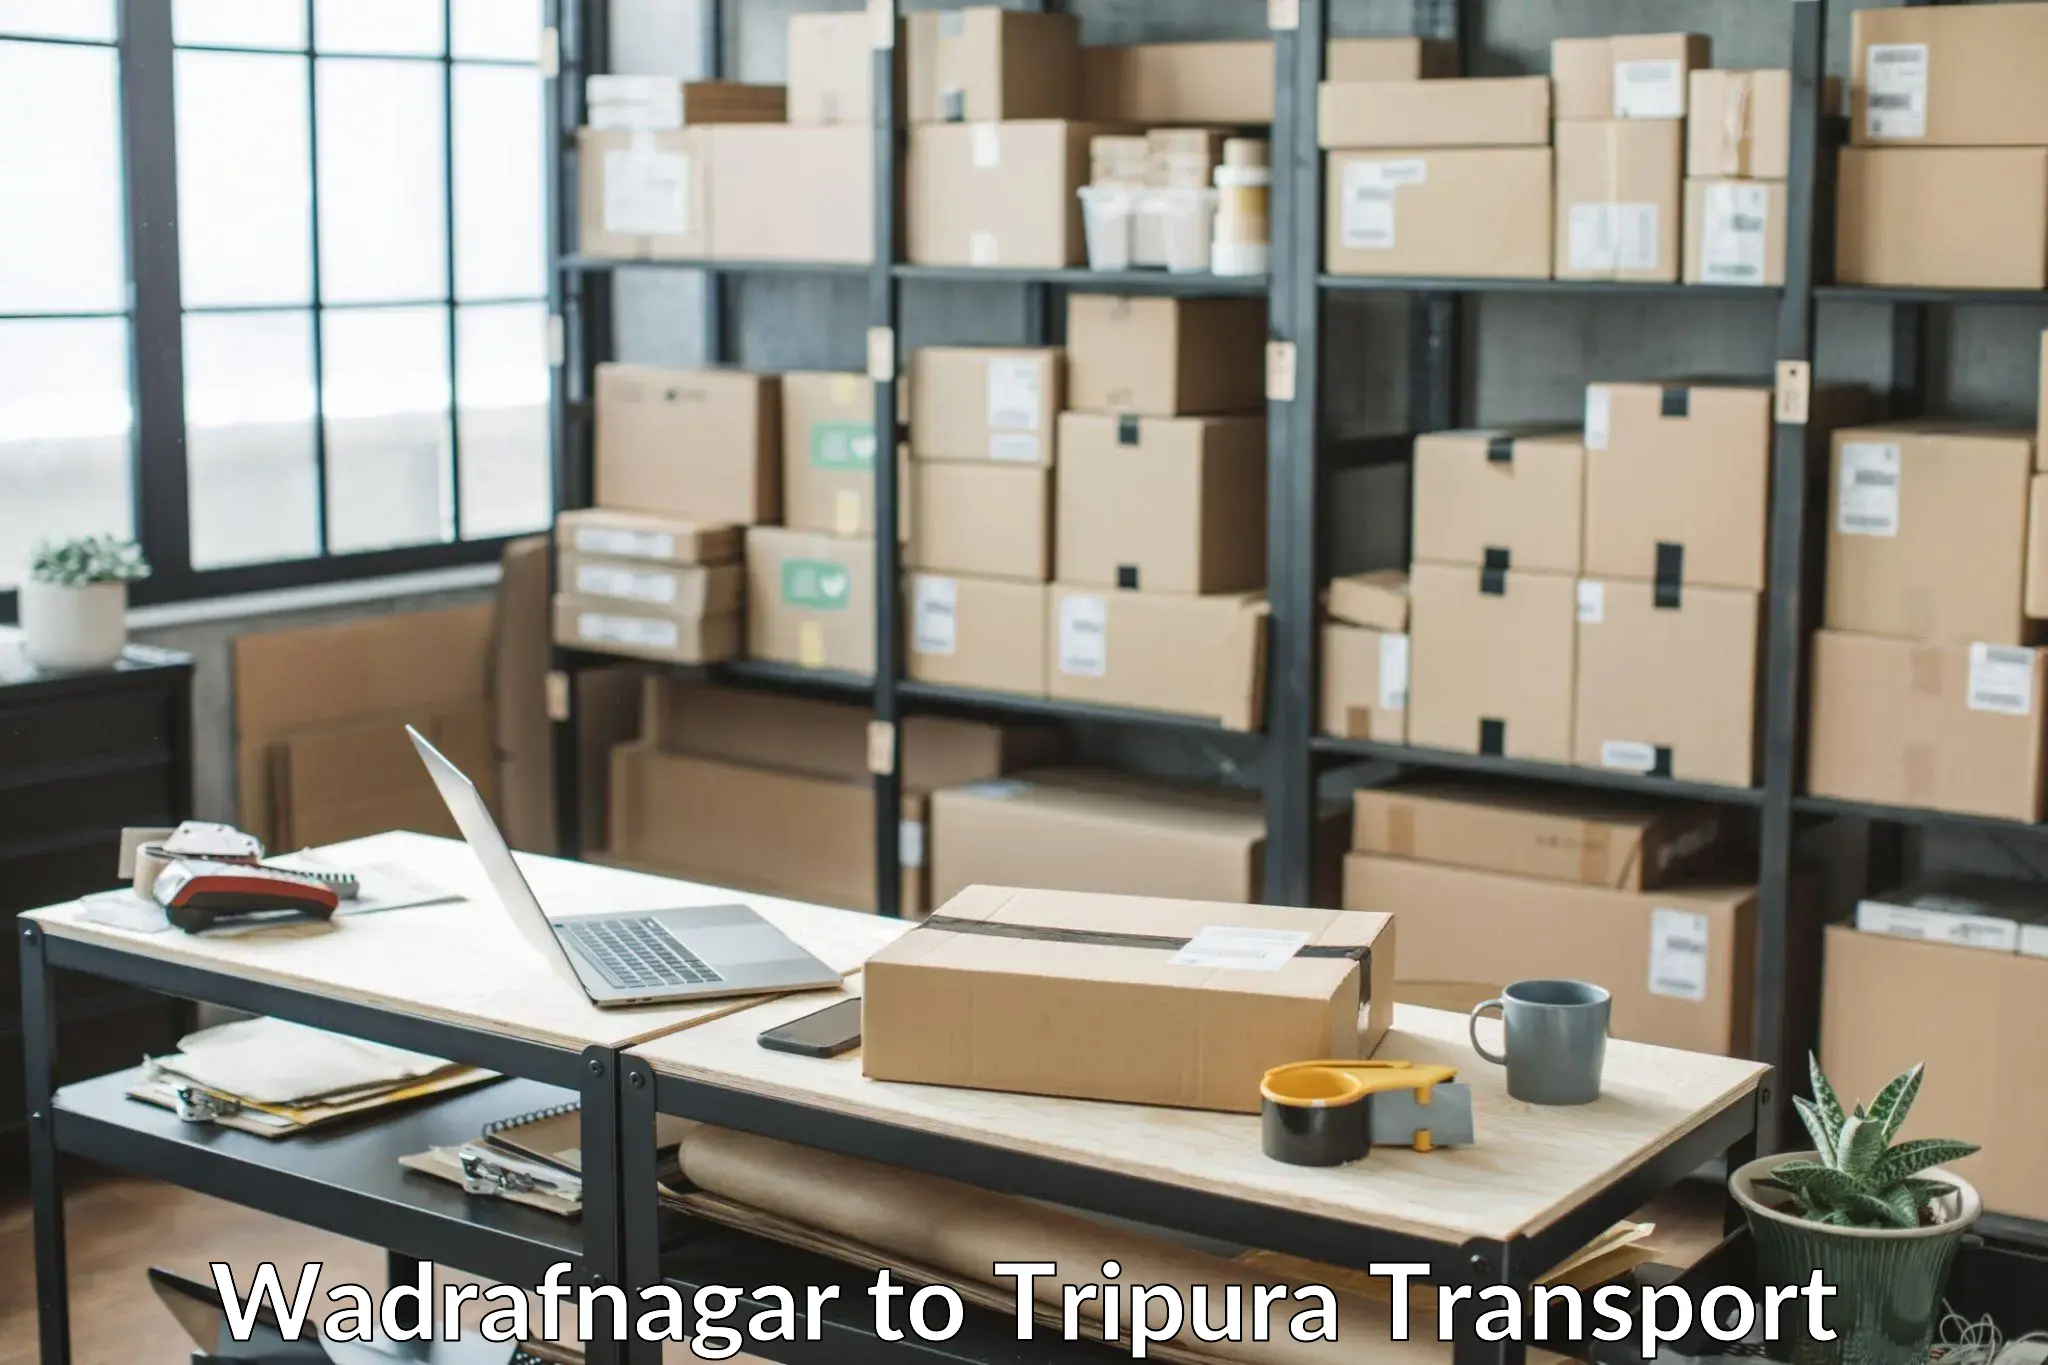 Transportation services Wadrafnagar to Tripura